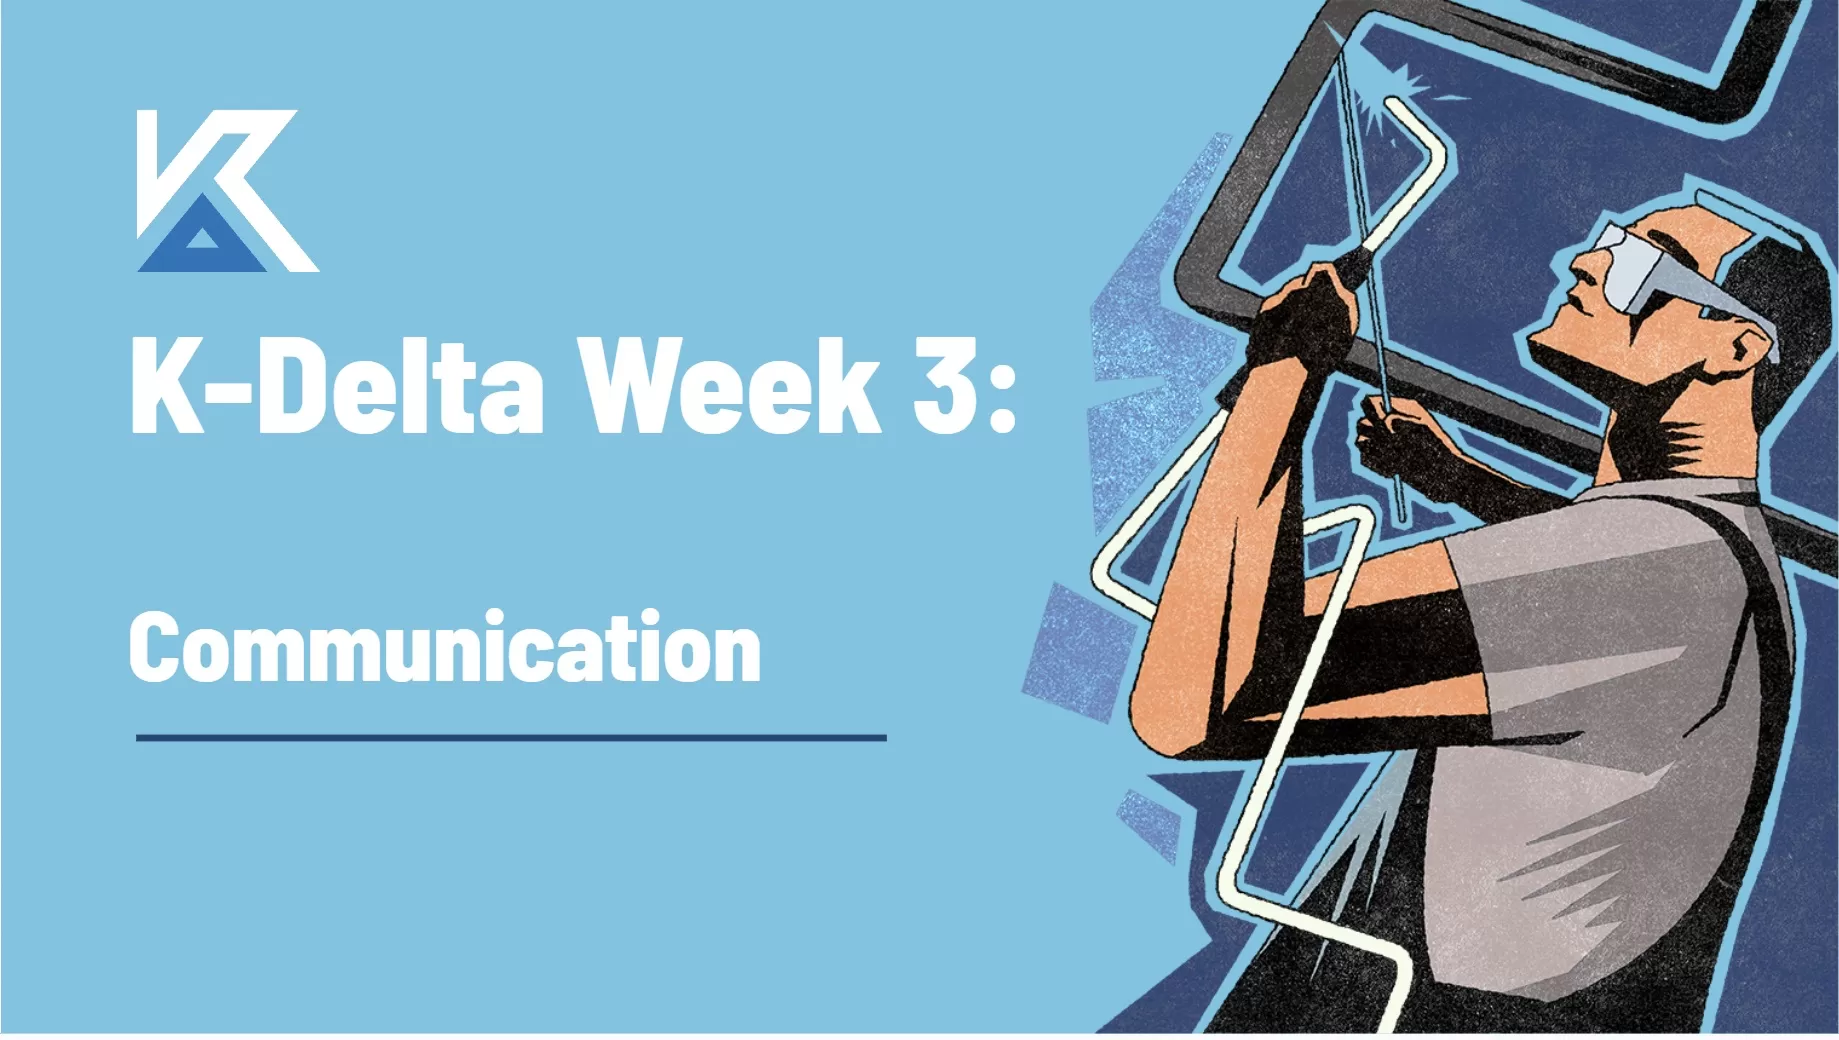 K-Delta Week 3 - Communication